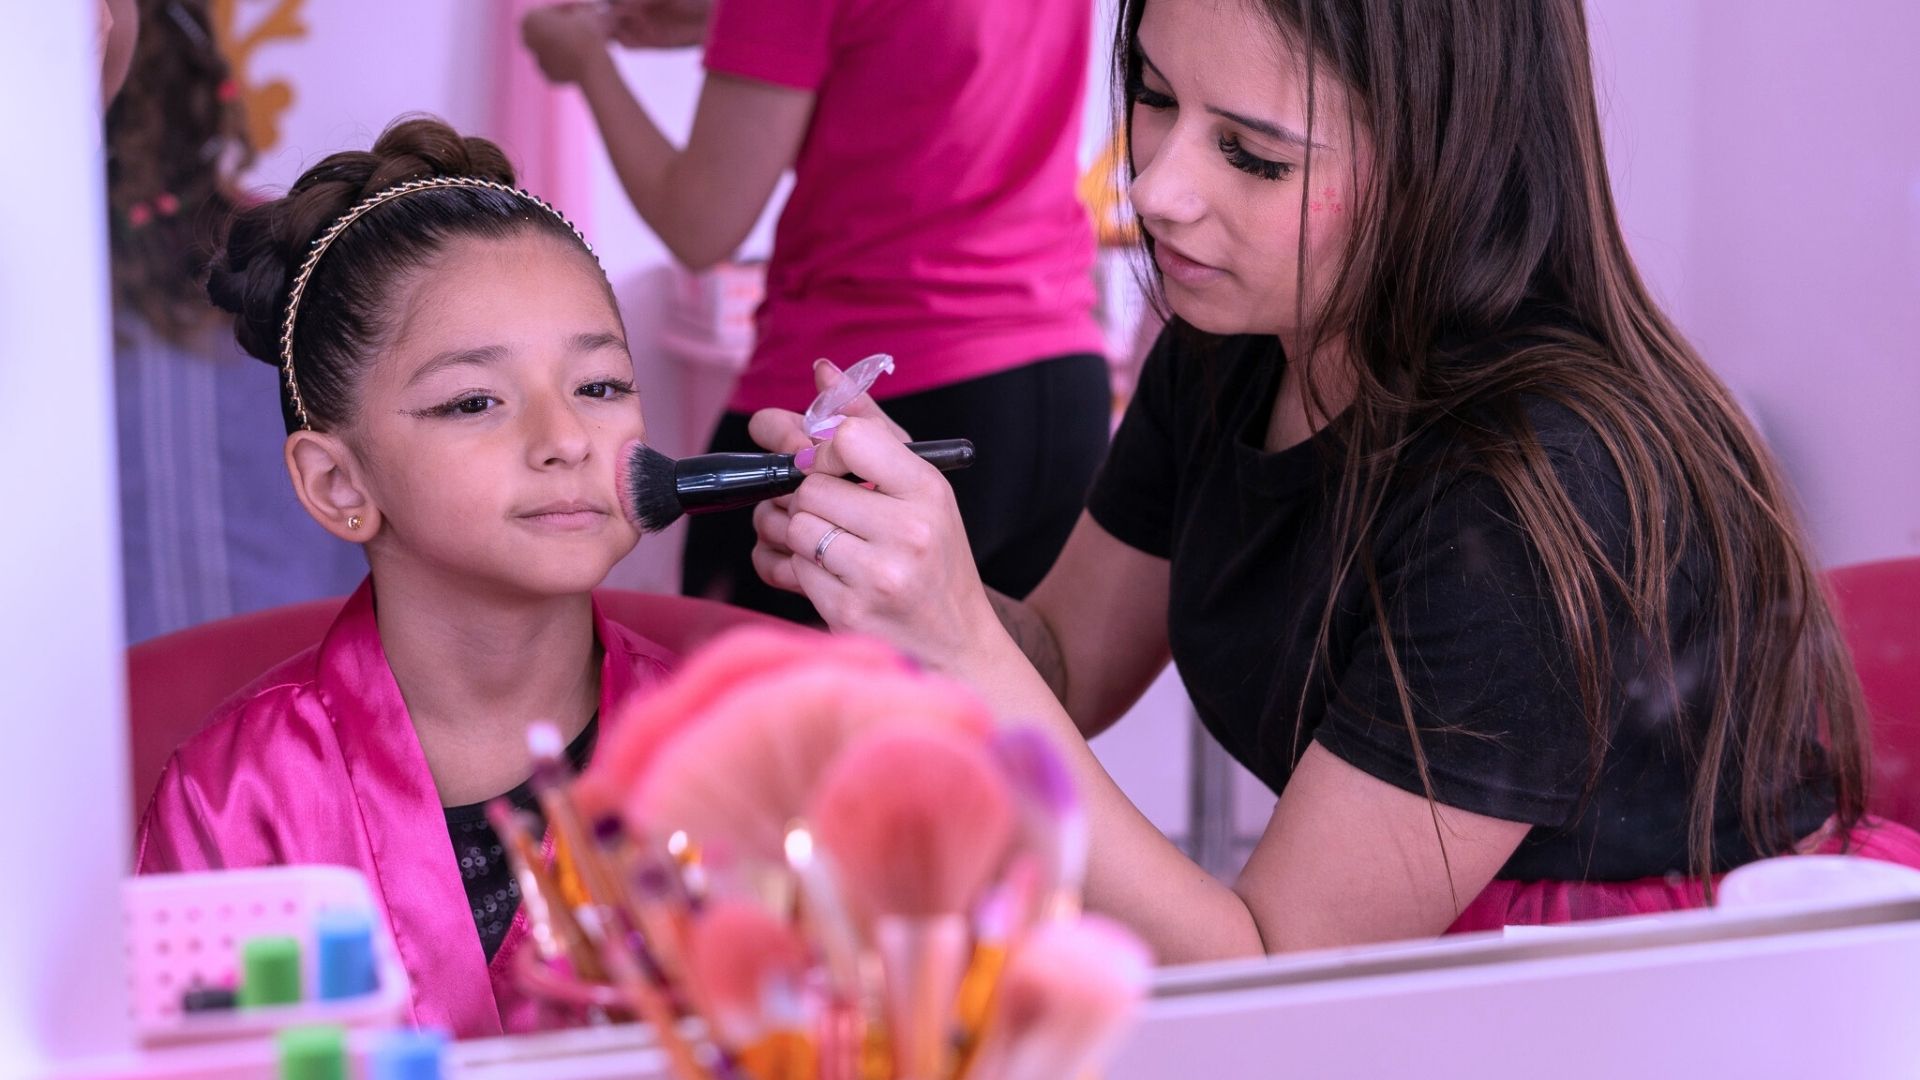 Para comemorar aniversário de 7 anos, menina faz 'spa day' para convidadas  e viraliza na web, Mato Grosso do Sul